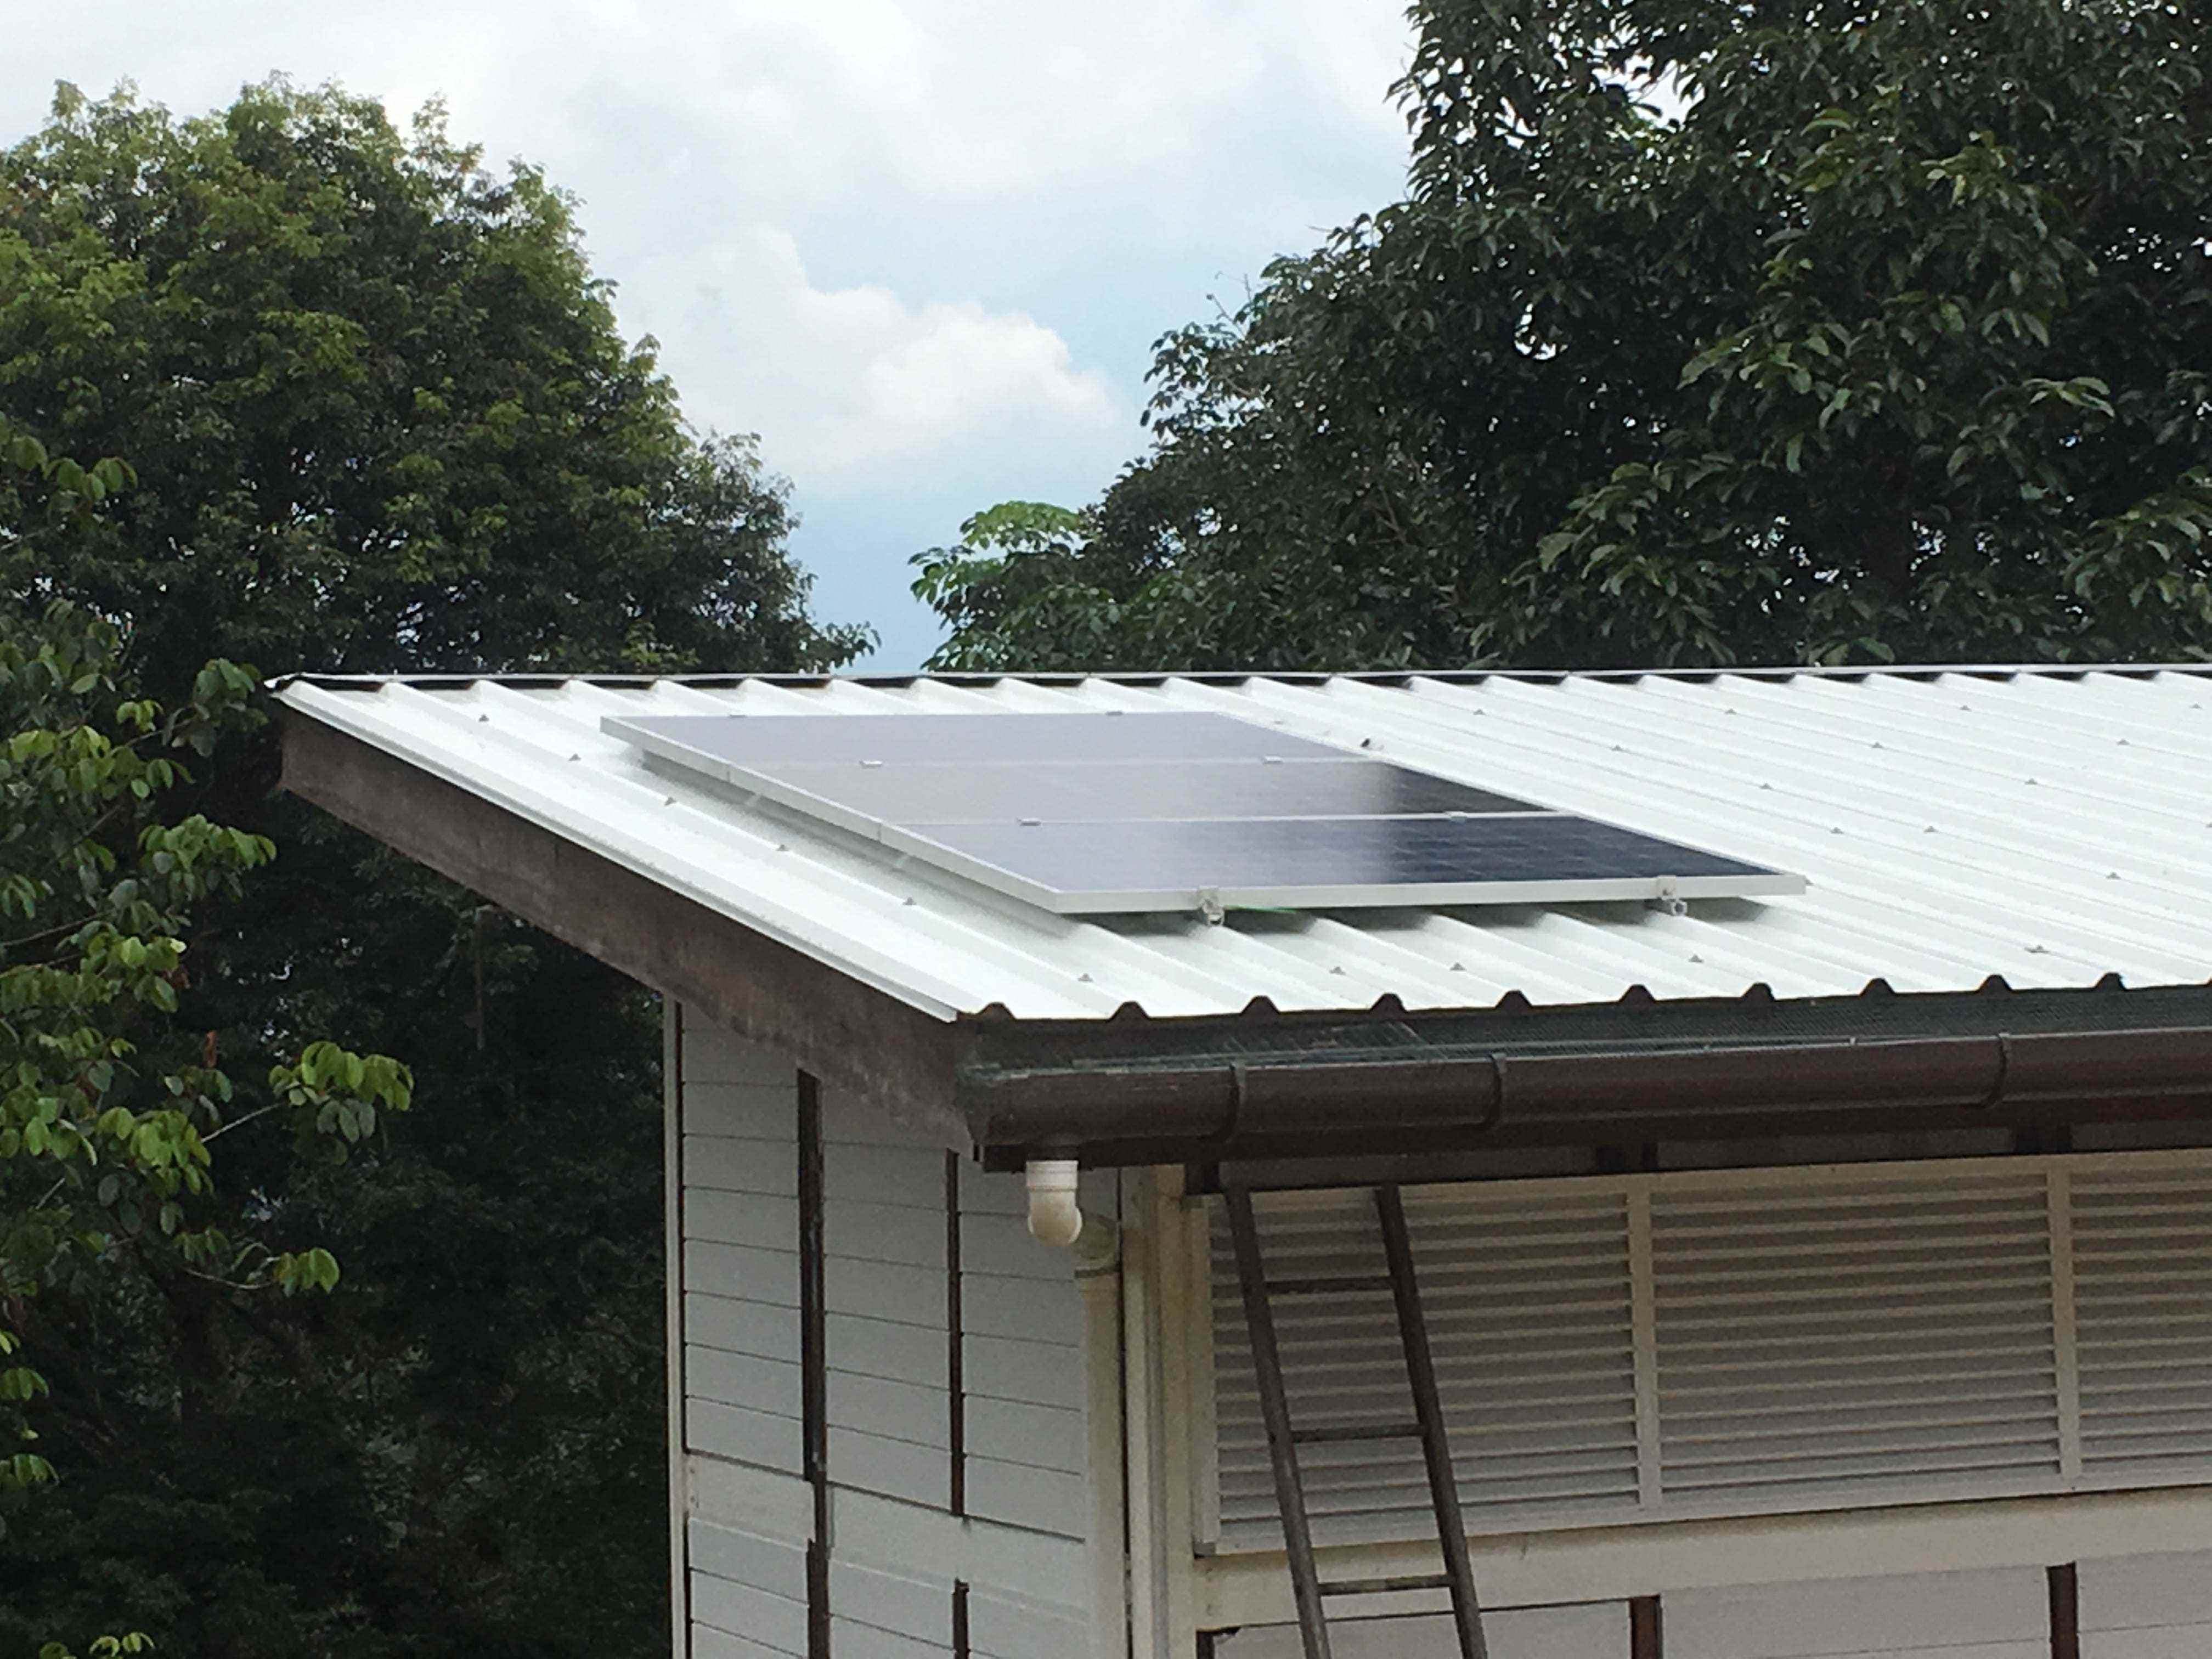 Sonnenkollektoren auf dem Dach.